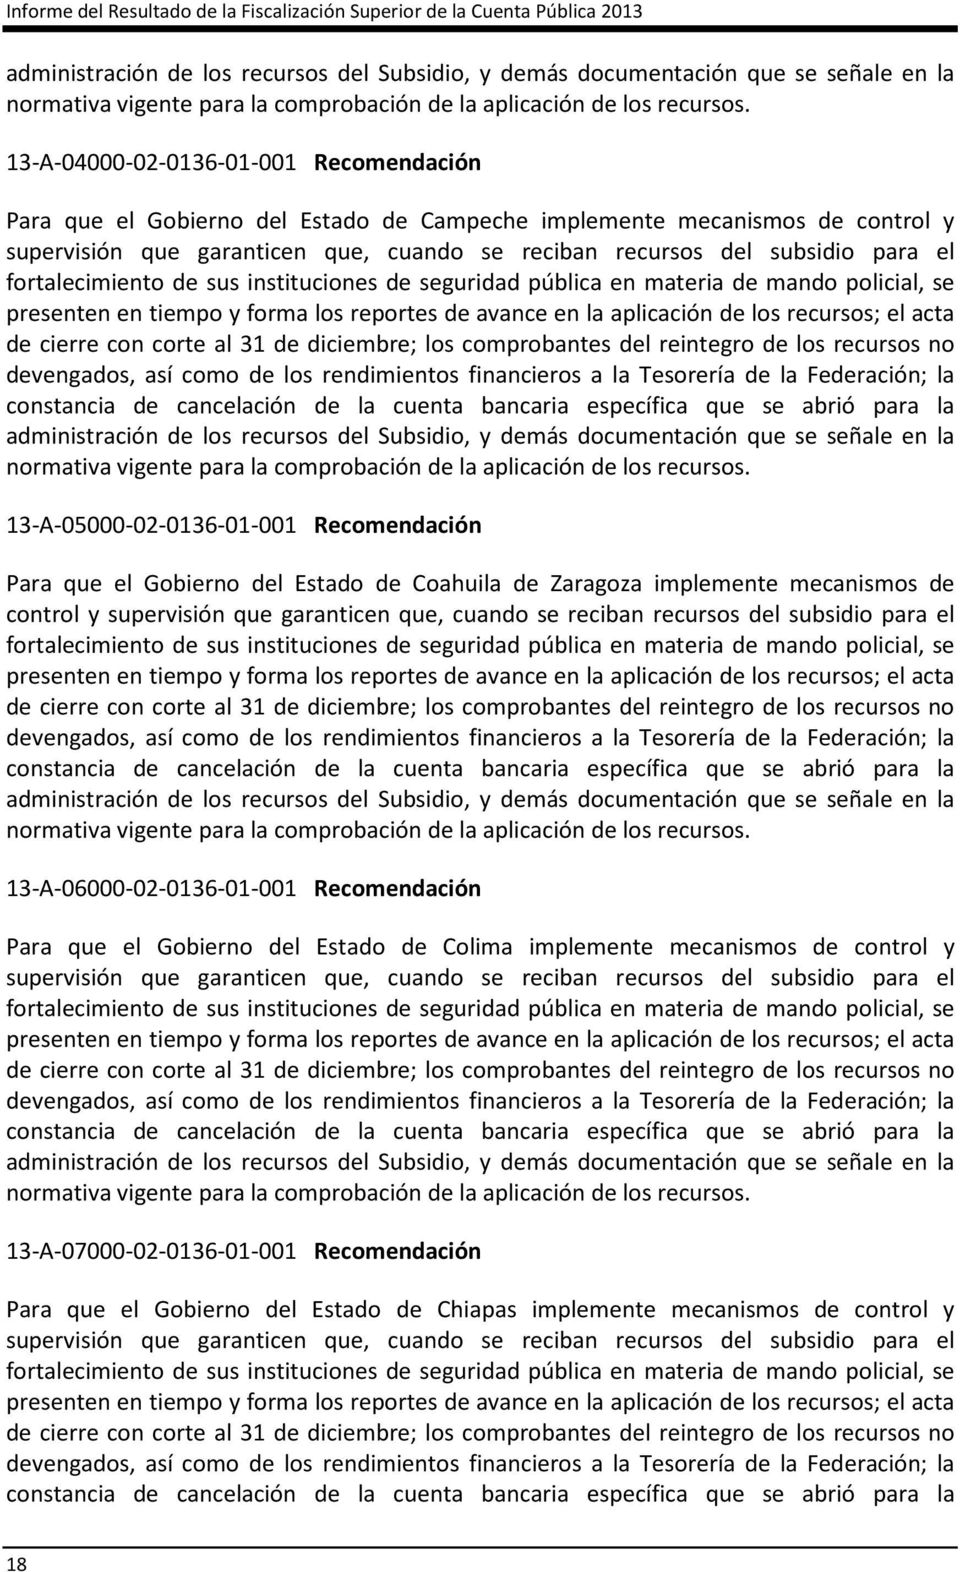 13-A-04000-02-0136-01-001 Recomendación Para que el Gobierno del Estado de Campeche implemente mecanismos de control y supervisión que garanticen que, cuando se reciban recursos del subsidio para el